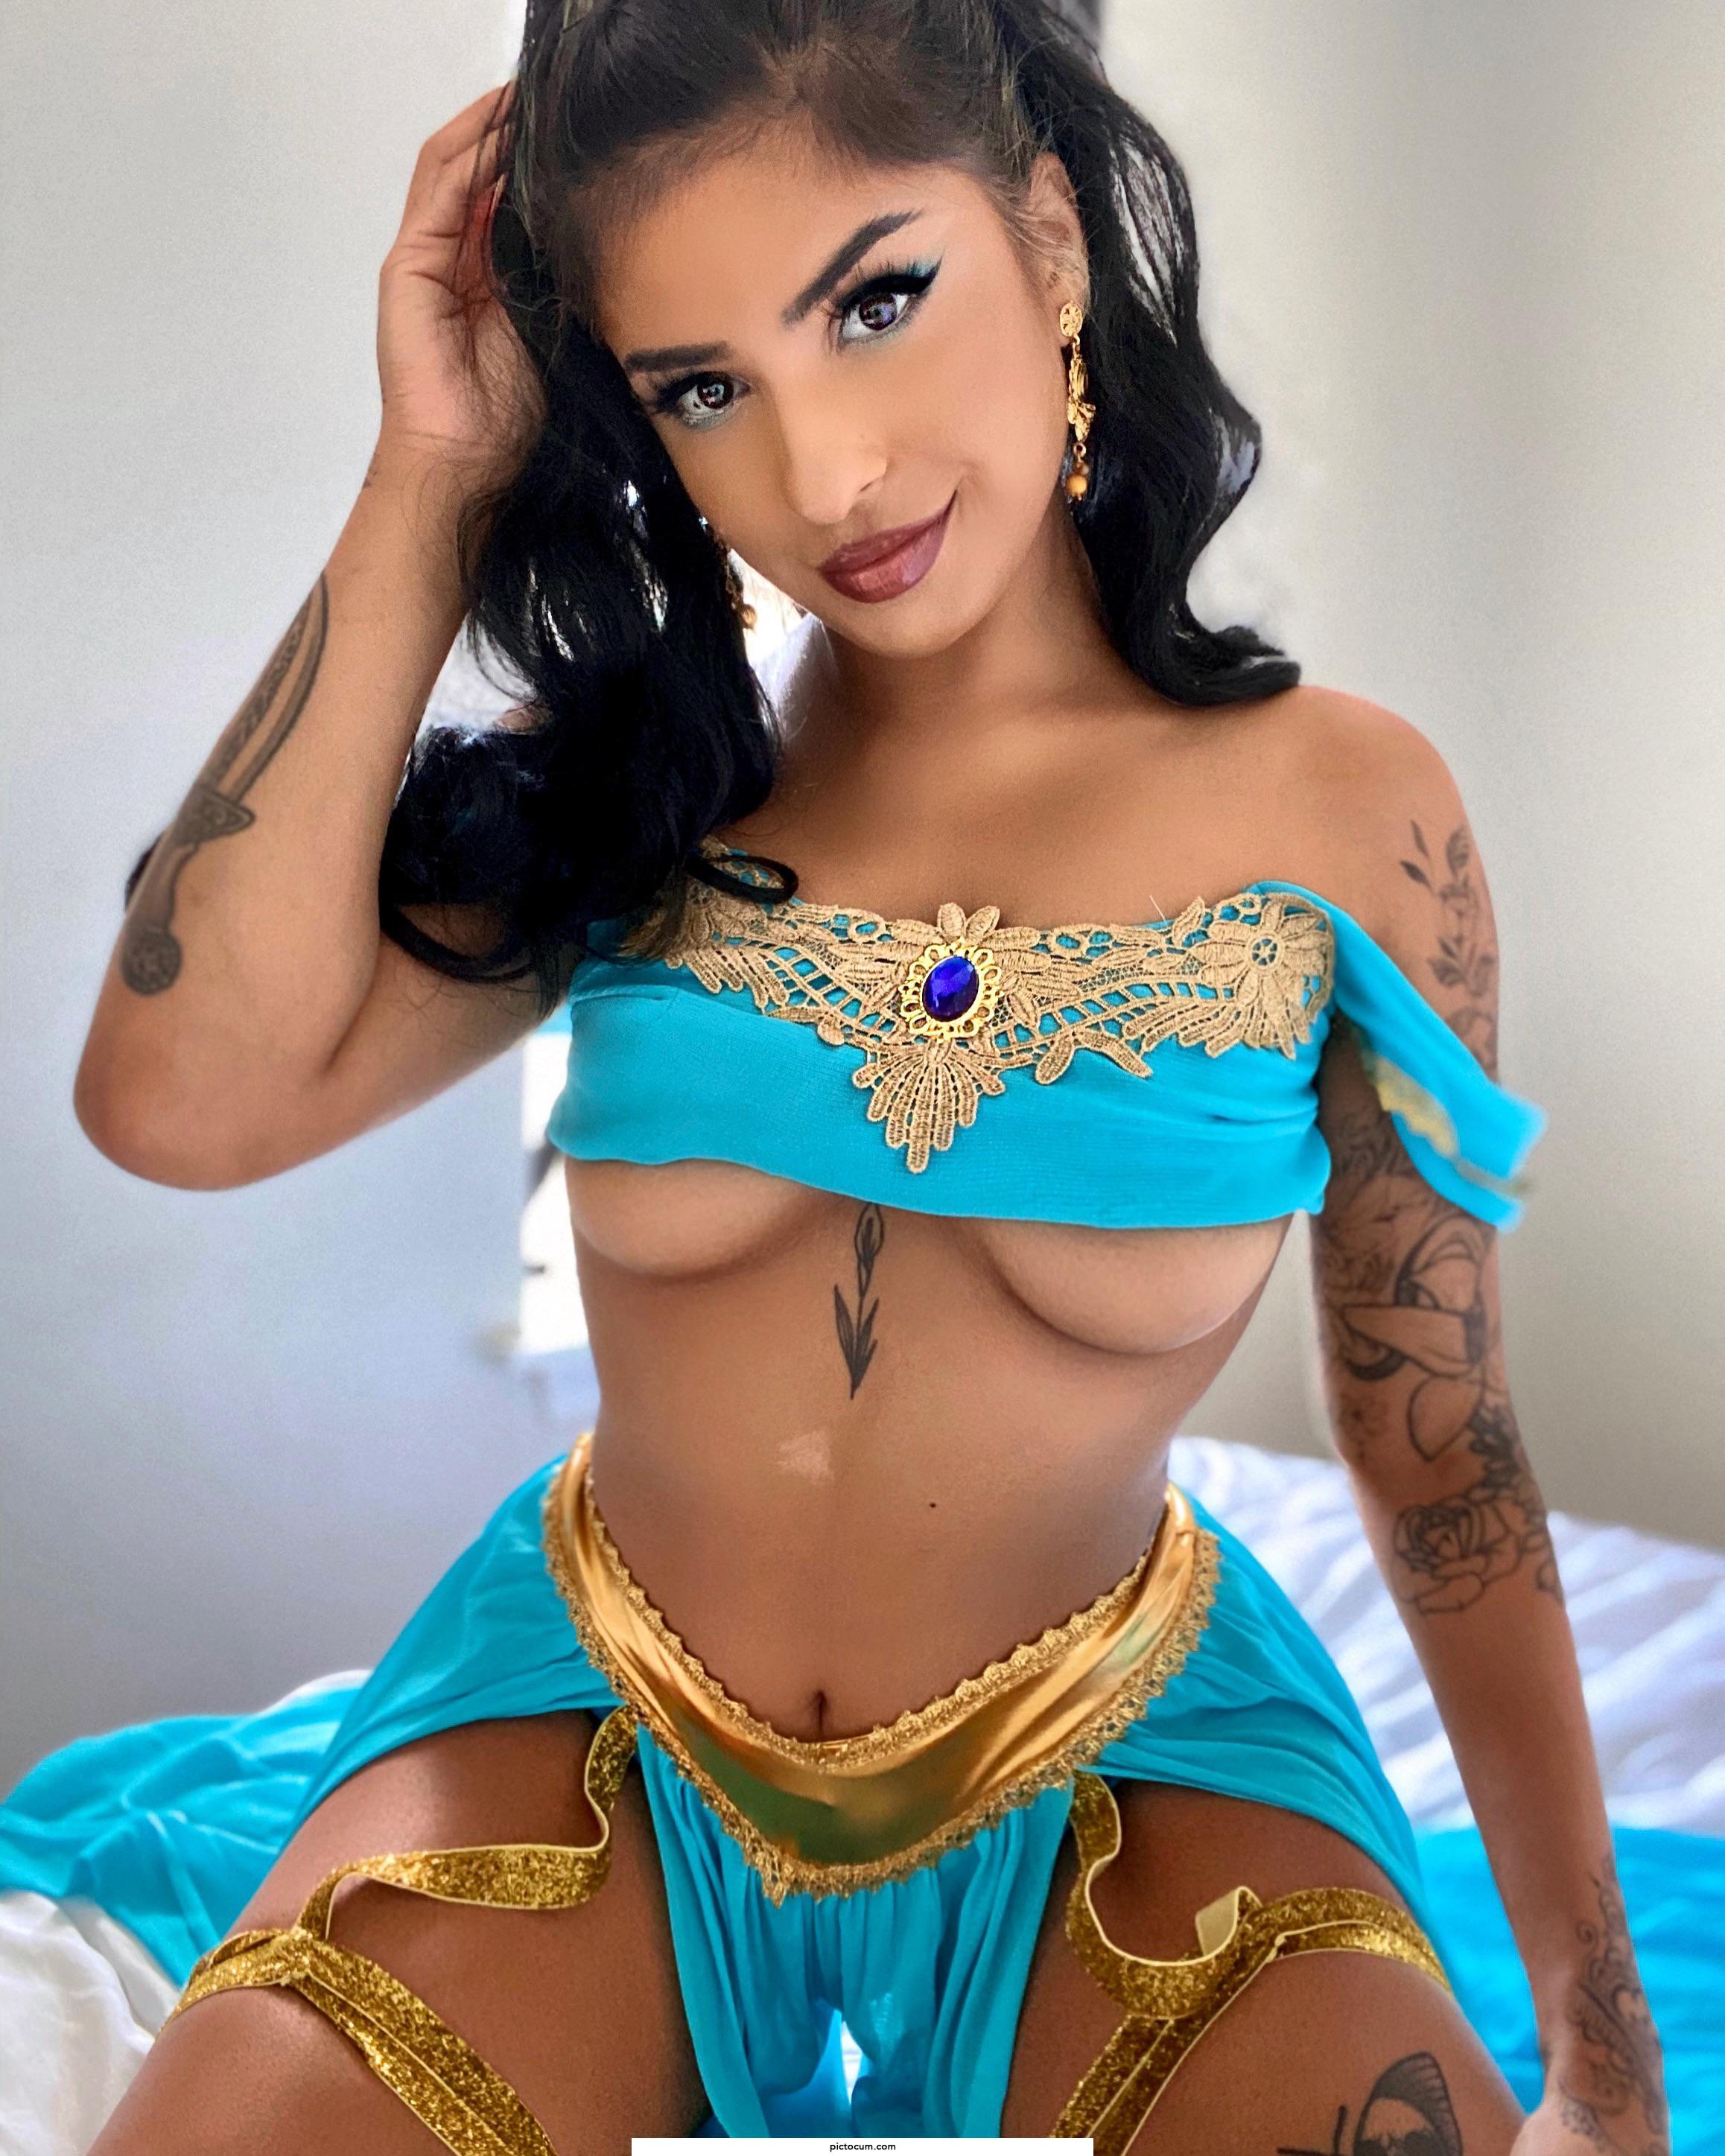 Looks like Princess Jasmine got some ink… 👀